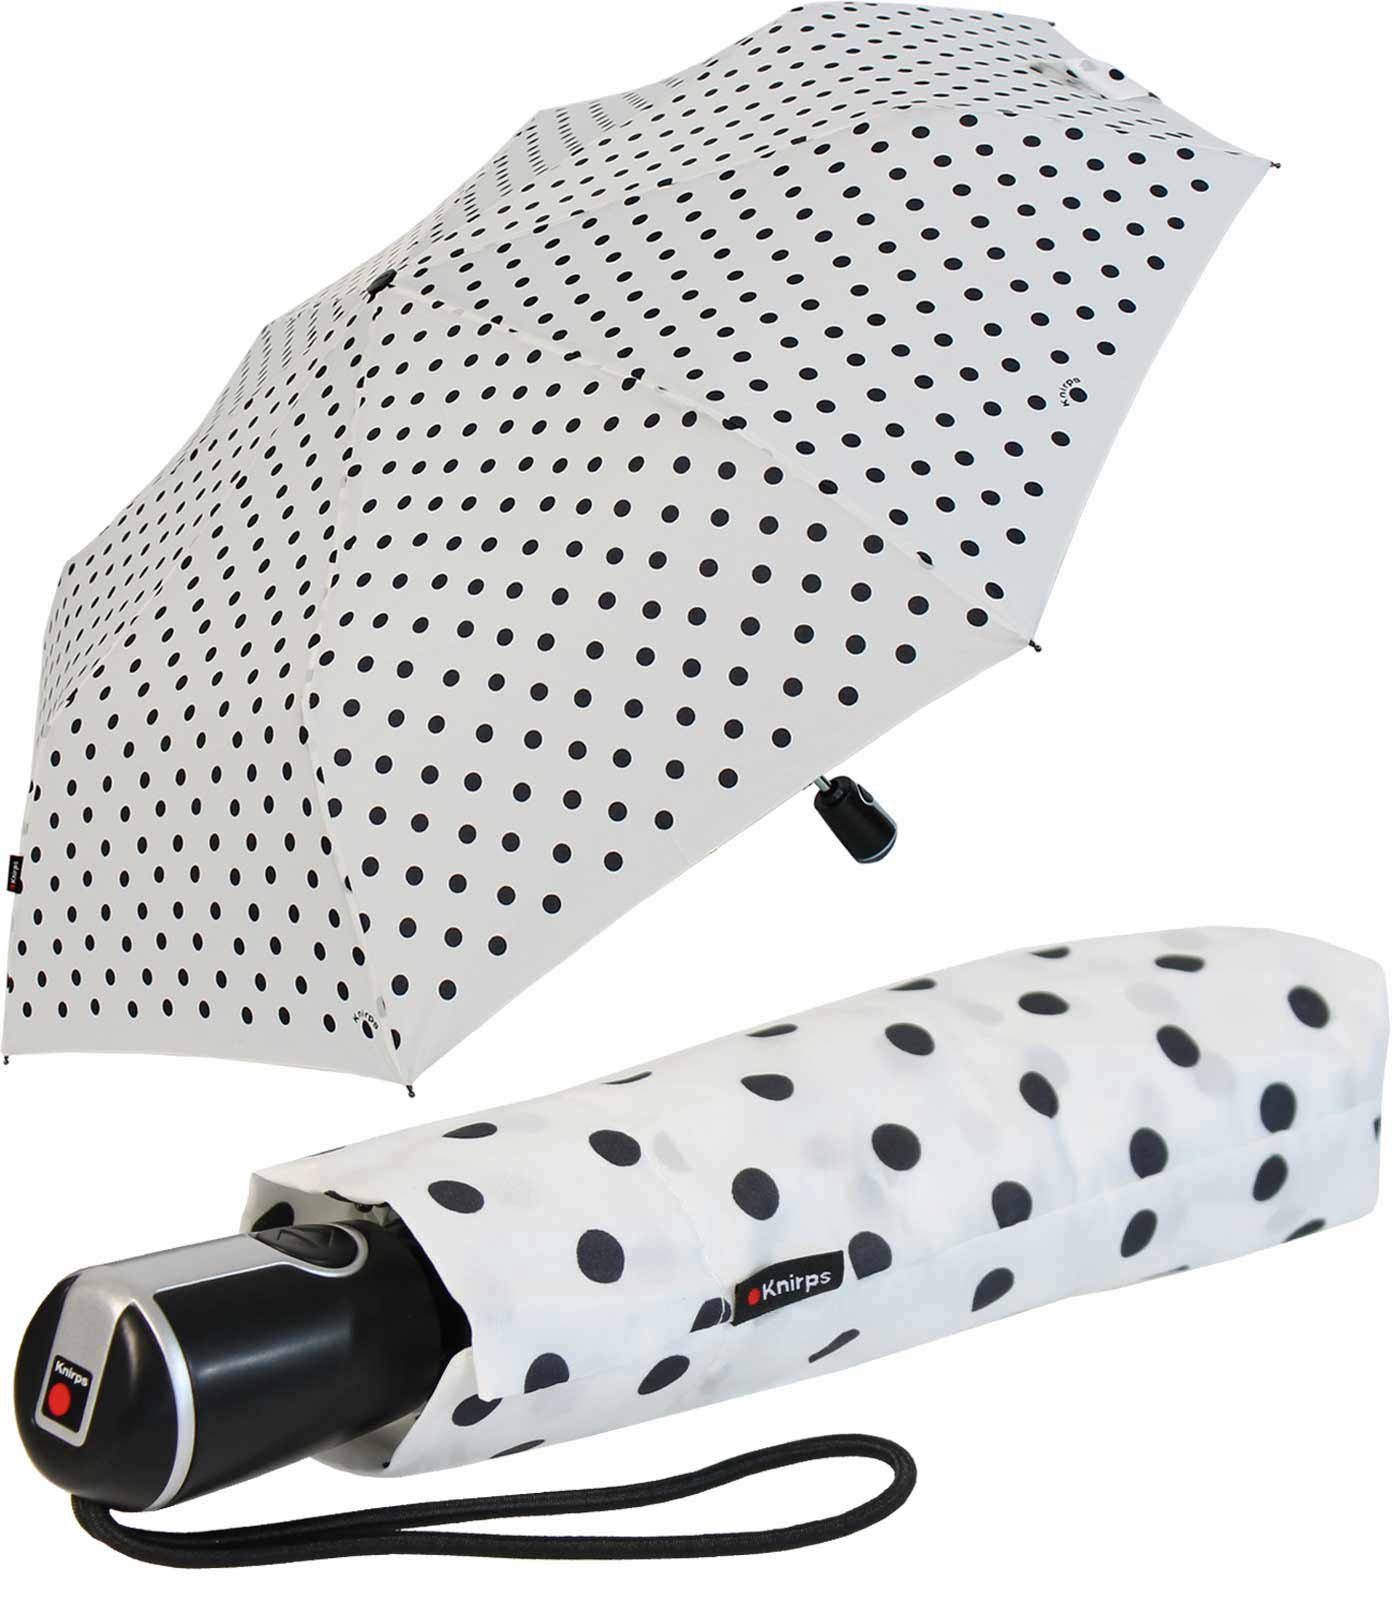 Knirps® Taschenregenschirm Large Duomatic mit Auf-Zu-Automatik - Polka Dots, der große, stabile Begleiter weiß-schwarz